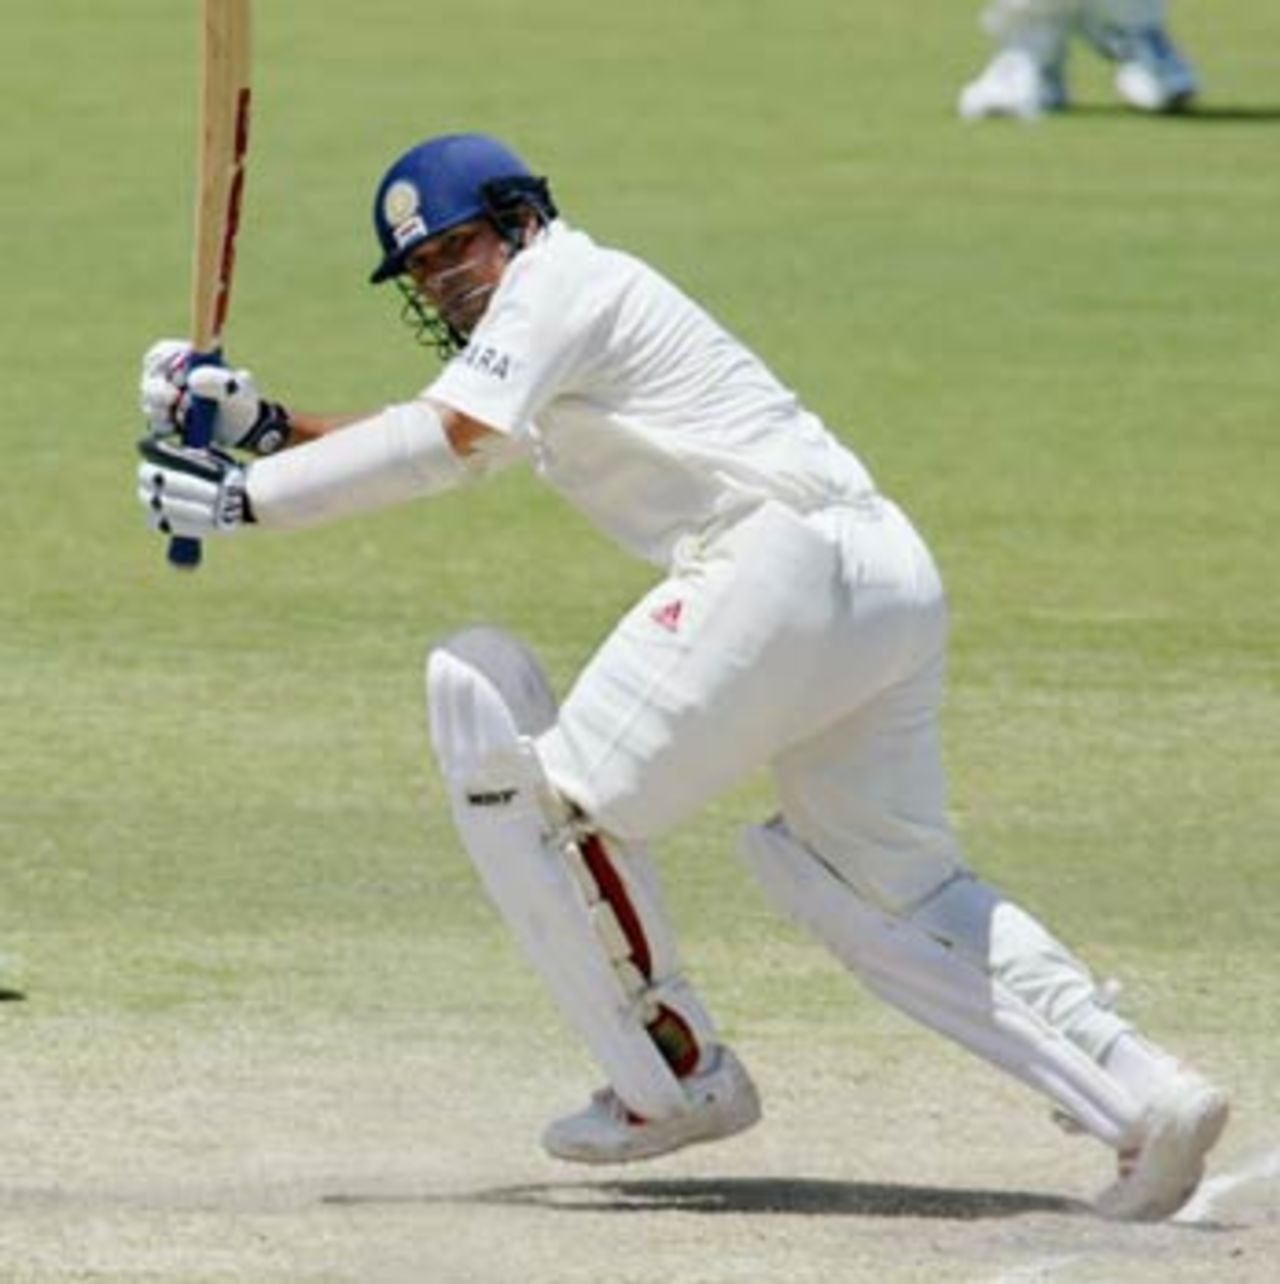 Tendulkar got the scoreboard ticking over with crisp strokes, Australia v India, 2nd Test, Adelaide, 5th day, December 16, 2003